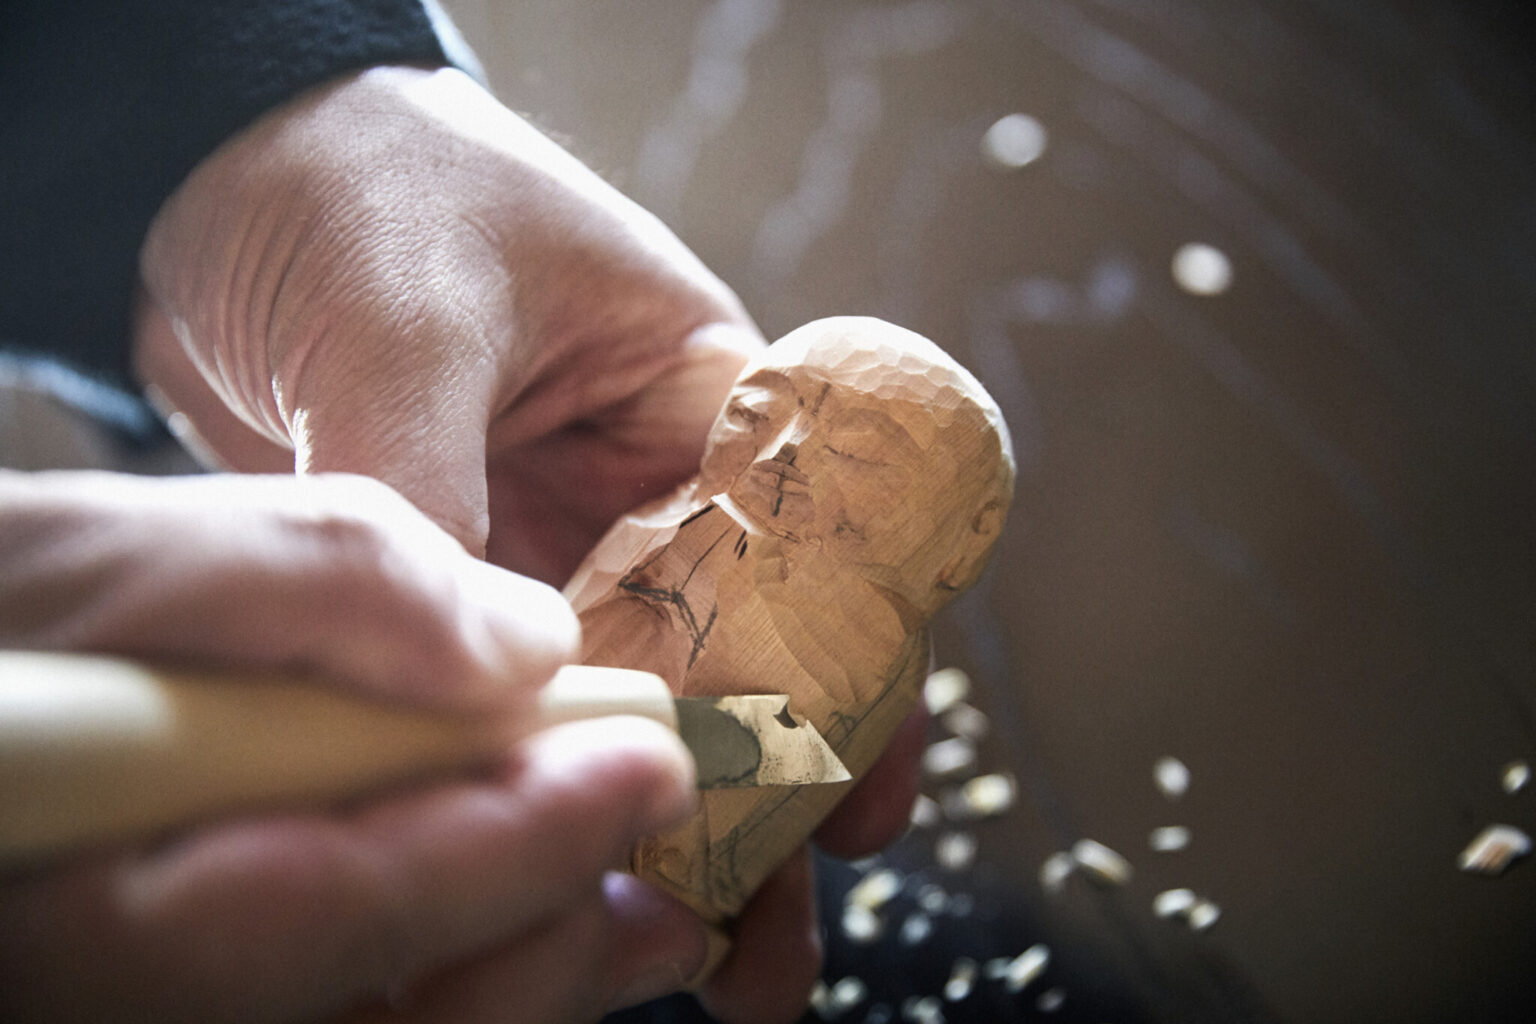 三浦さんにより荒彫りされたヒノキを、彫刻刀を使って彫っていく。木の香りも清々しく、心癒されるひとときになるはず。